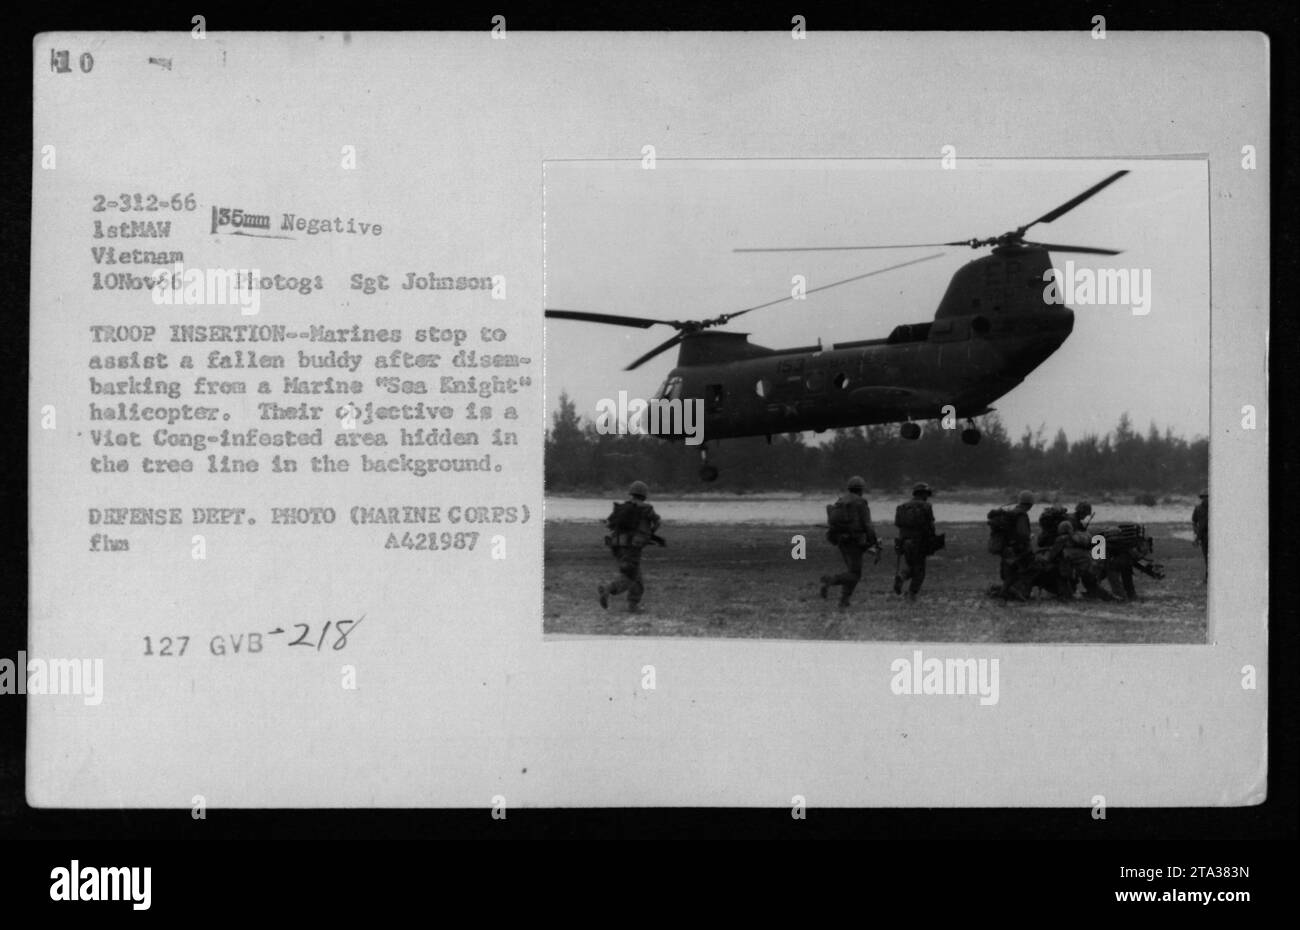 Die Marines unterstützen einen gefallenen Kameraden, nachdem sie am 10. November 1966 aus einem CH-46 'Sea Knight' Hubschrauber in Vietnam ausgestiegen sind. Das Ziel der Truppen ist es, eine Baumlinie zu infiltrieren, die von vietnamesischen Soldaten befallen ist. Foto von Sgt. Johnson, dem Verteidigungsministerium zugeschrieben. Stockfoto